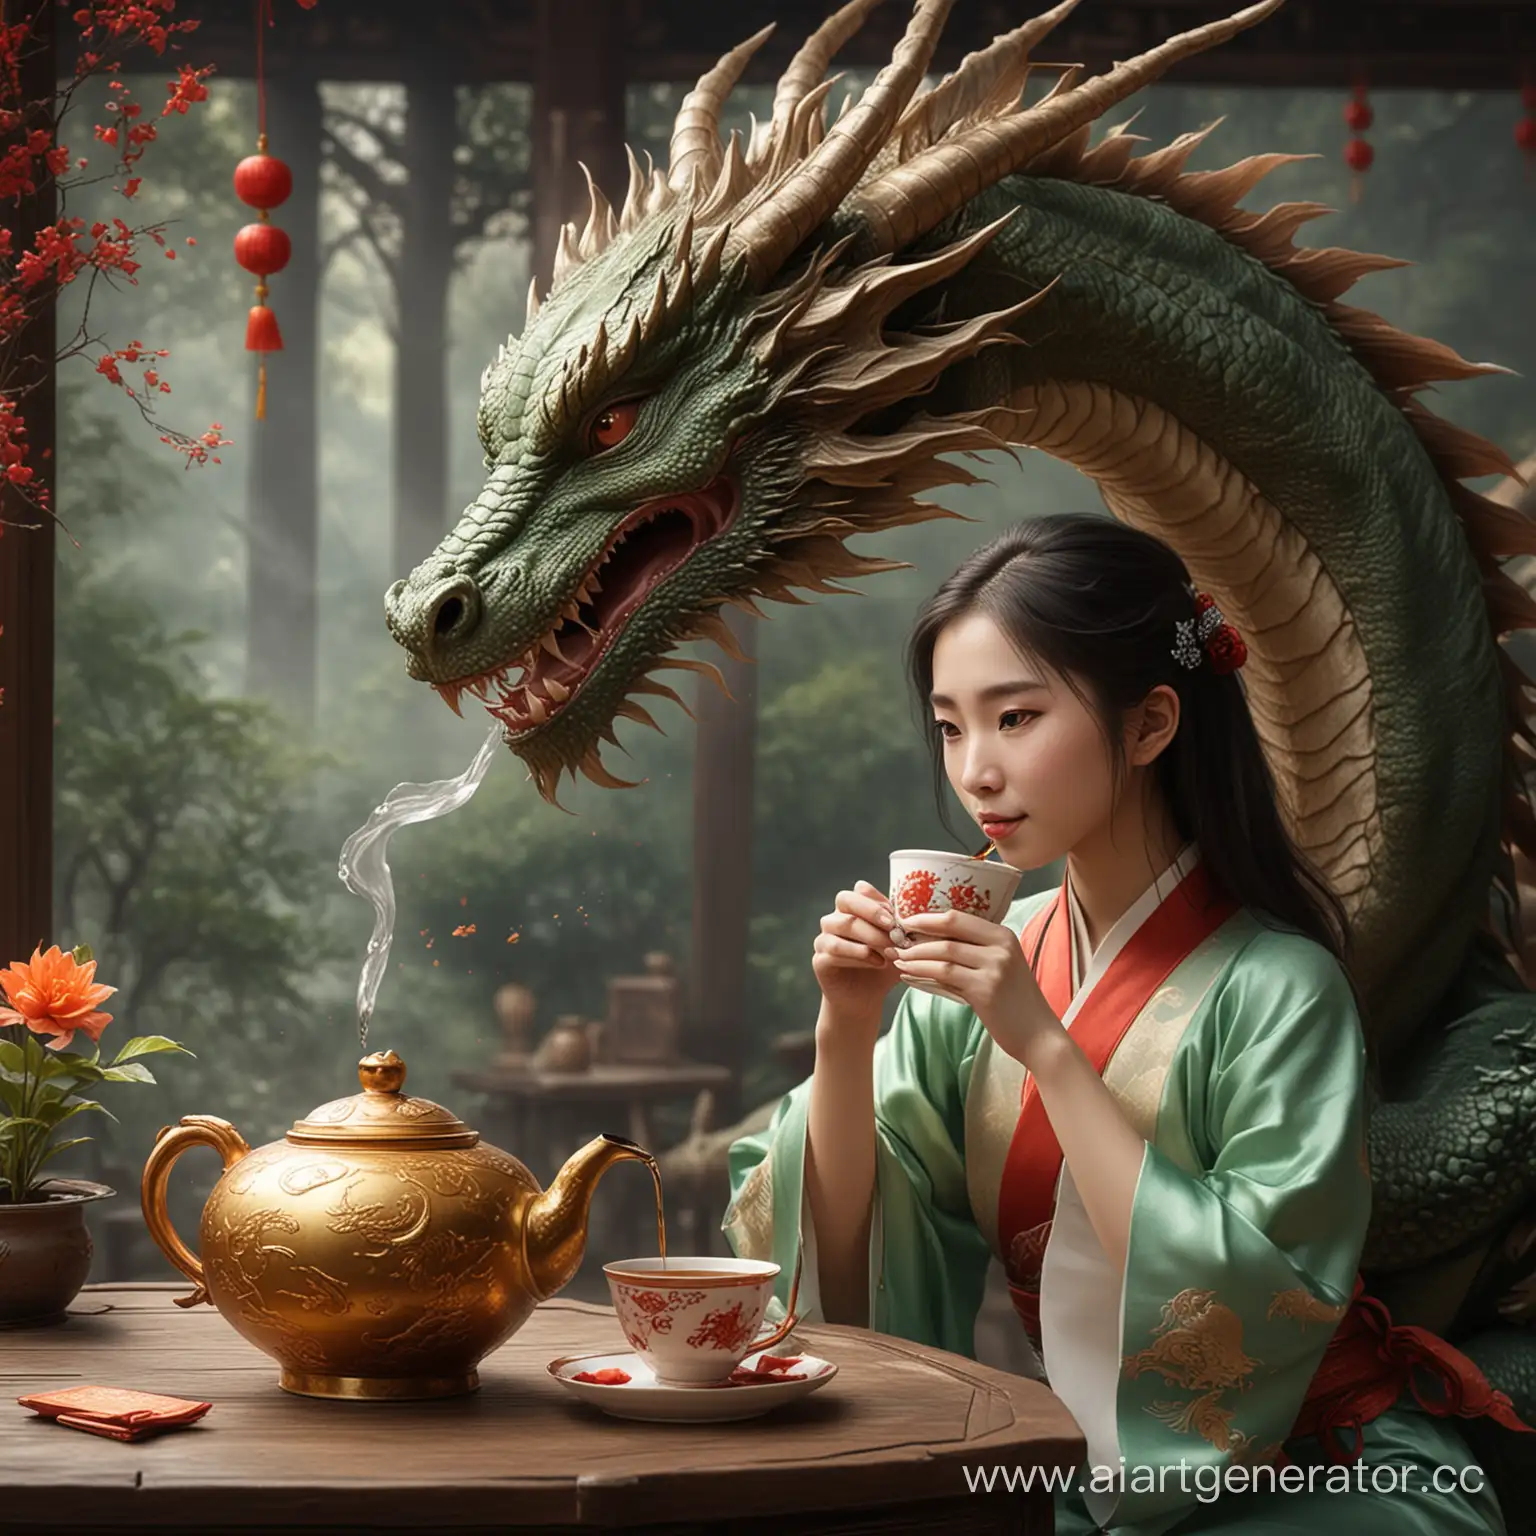 Дракон пьет китайский чай с девушкой